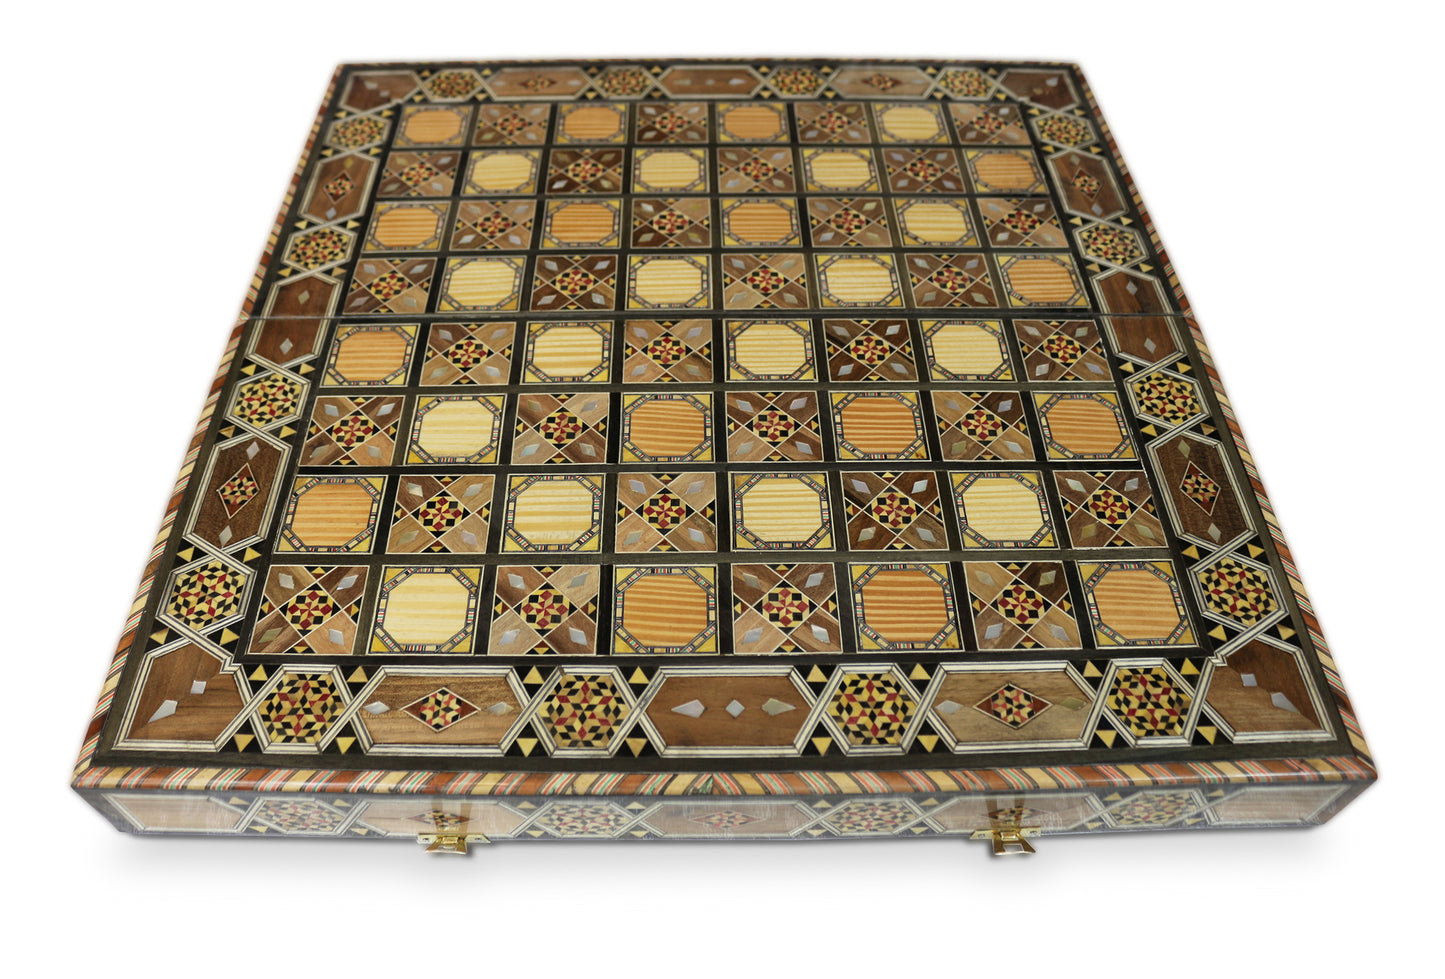 Neu 50x50 cm Holz Backgammon/Schachspiel/Tavla Brett  BK 504 mit Holz Backgammon Steine